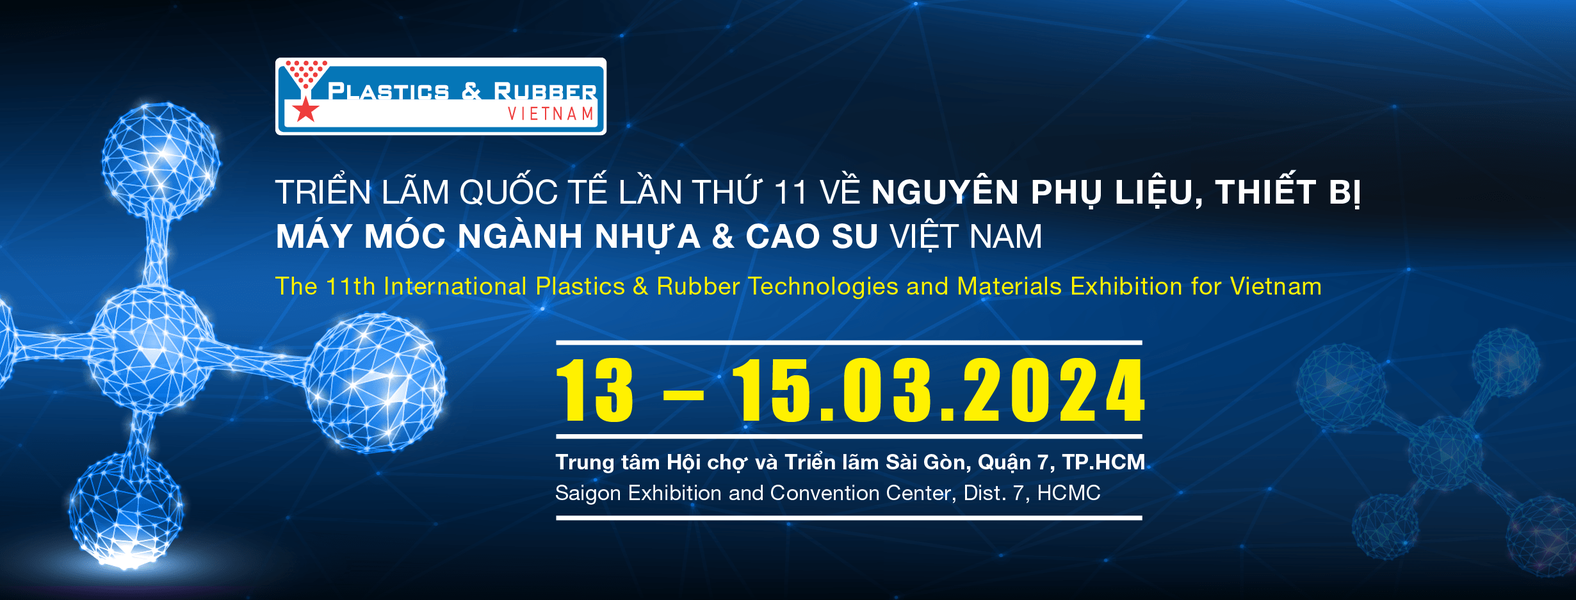 PLASTICS & RUBBER VIETNAM 2024 - Triển lãm và Hội thảo quốc tế về Công nghệ, Nguyên phụ liệu, và Thiết bị máy móc ngành Nhựa và Cao Su Việt Nam 2024